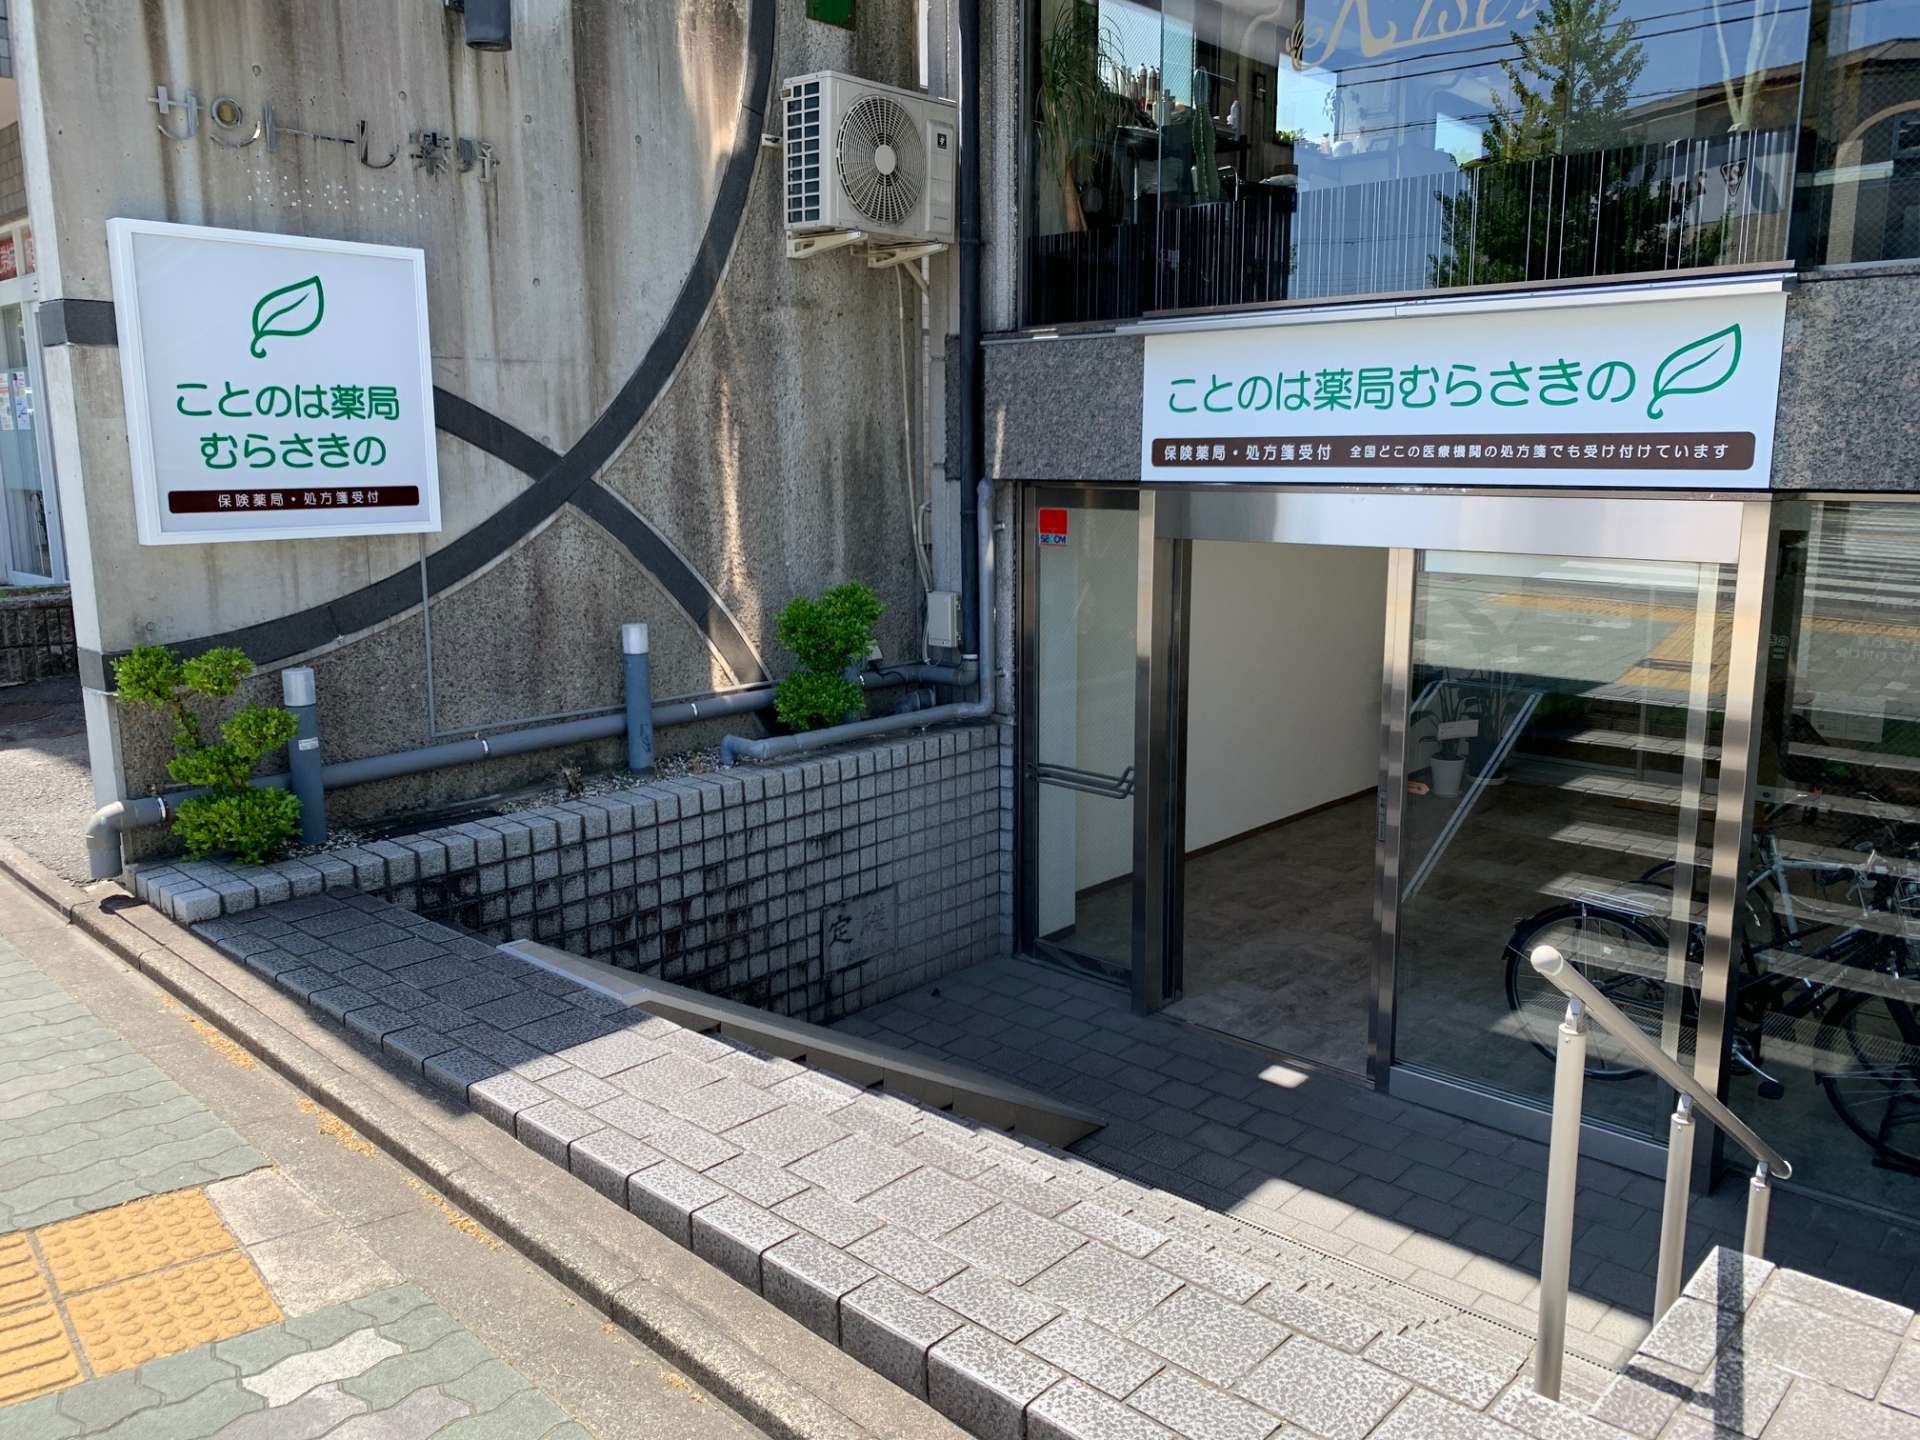 画像で京都市で展開している薬局サービスの様子をご案内